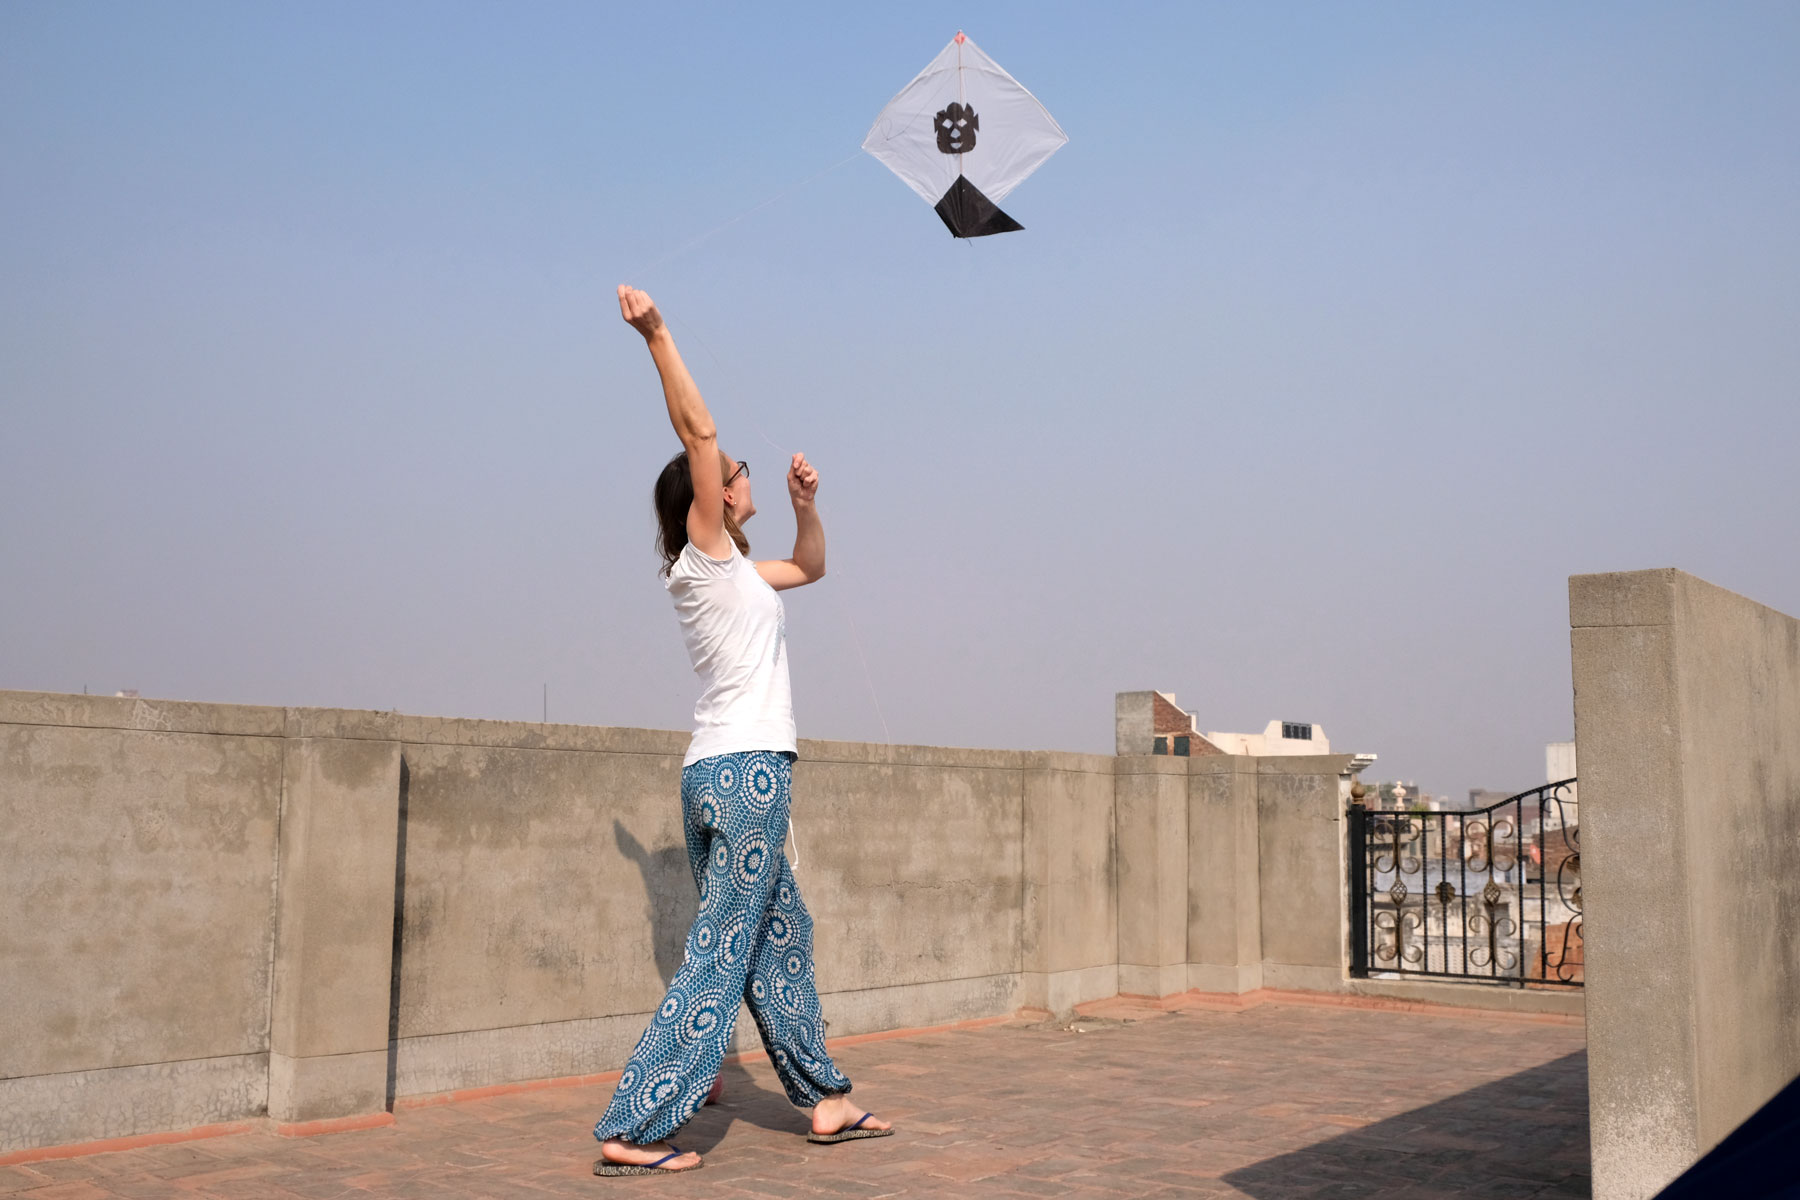 Leo lässt auf einer Dachterrasse in Amritsar einen Drachen steigen.